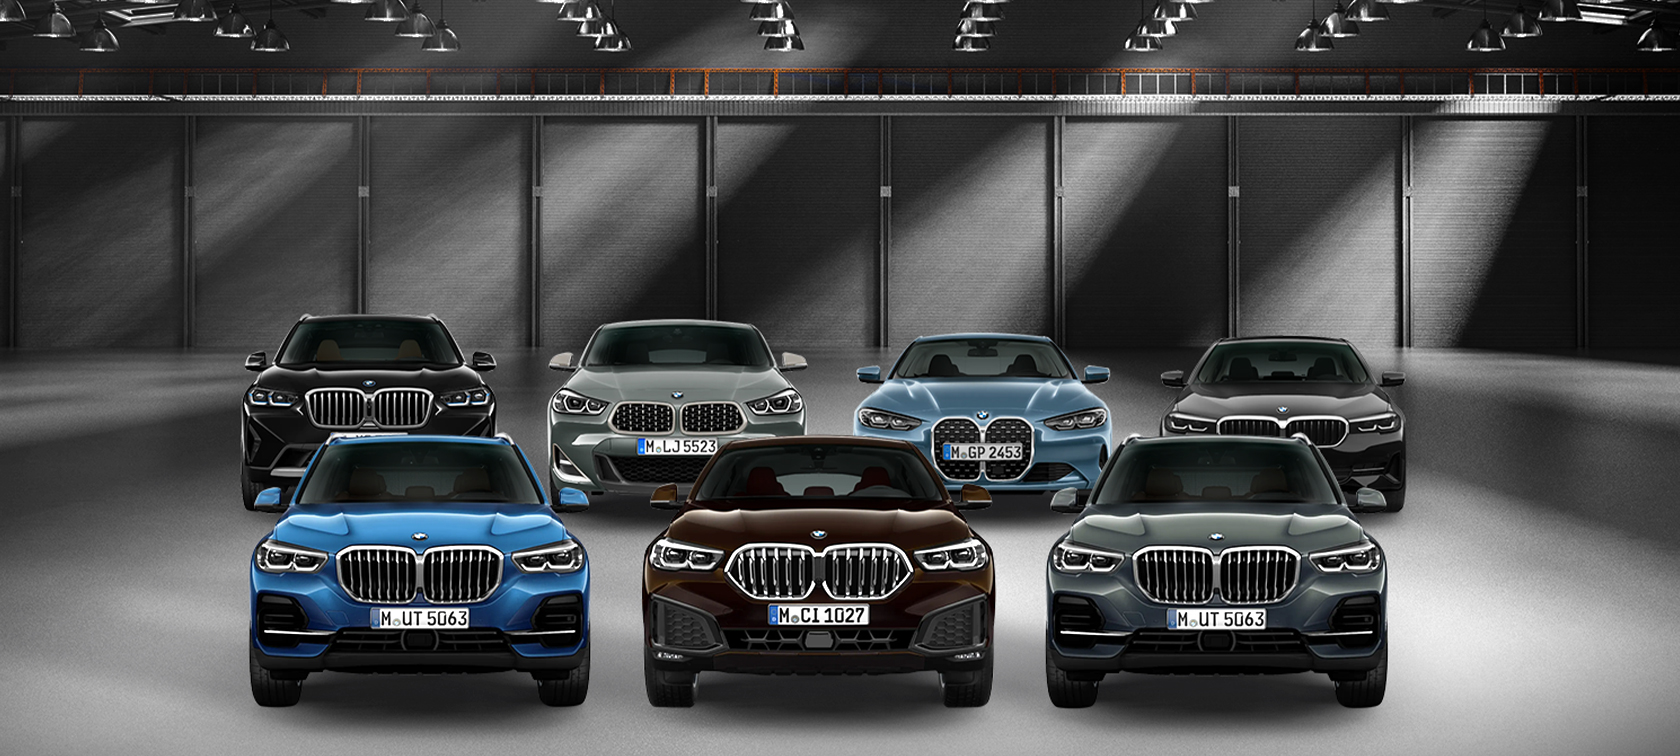 OFERTE BMW - Automobile Bavaria